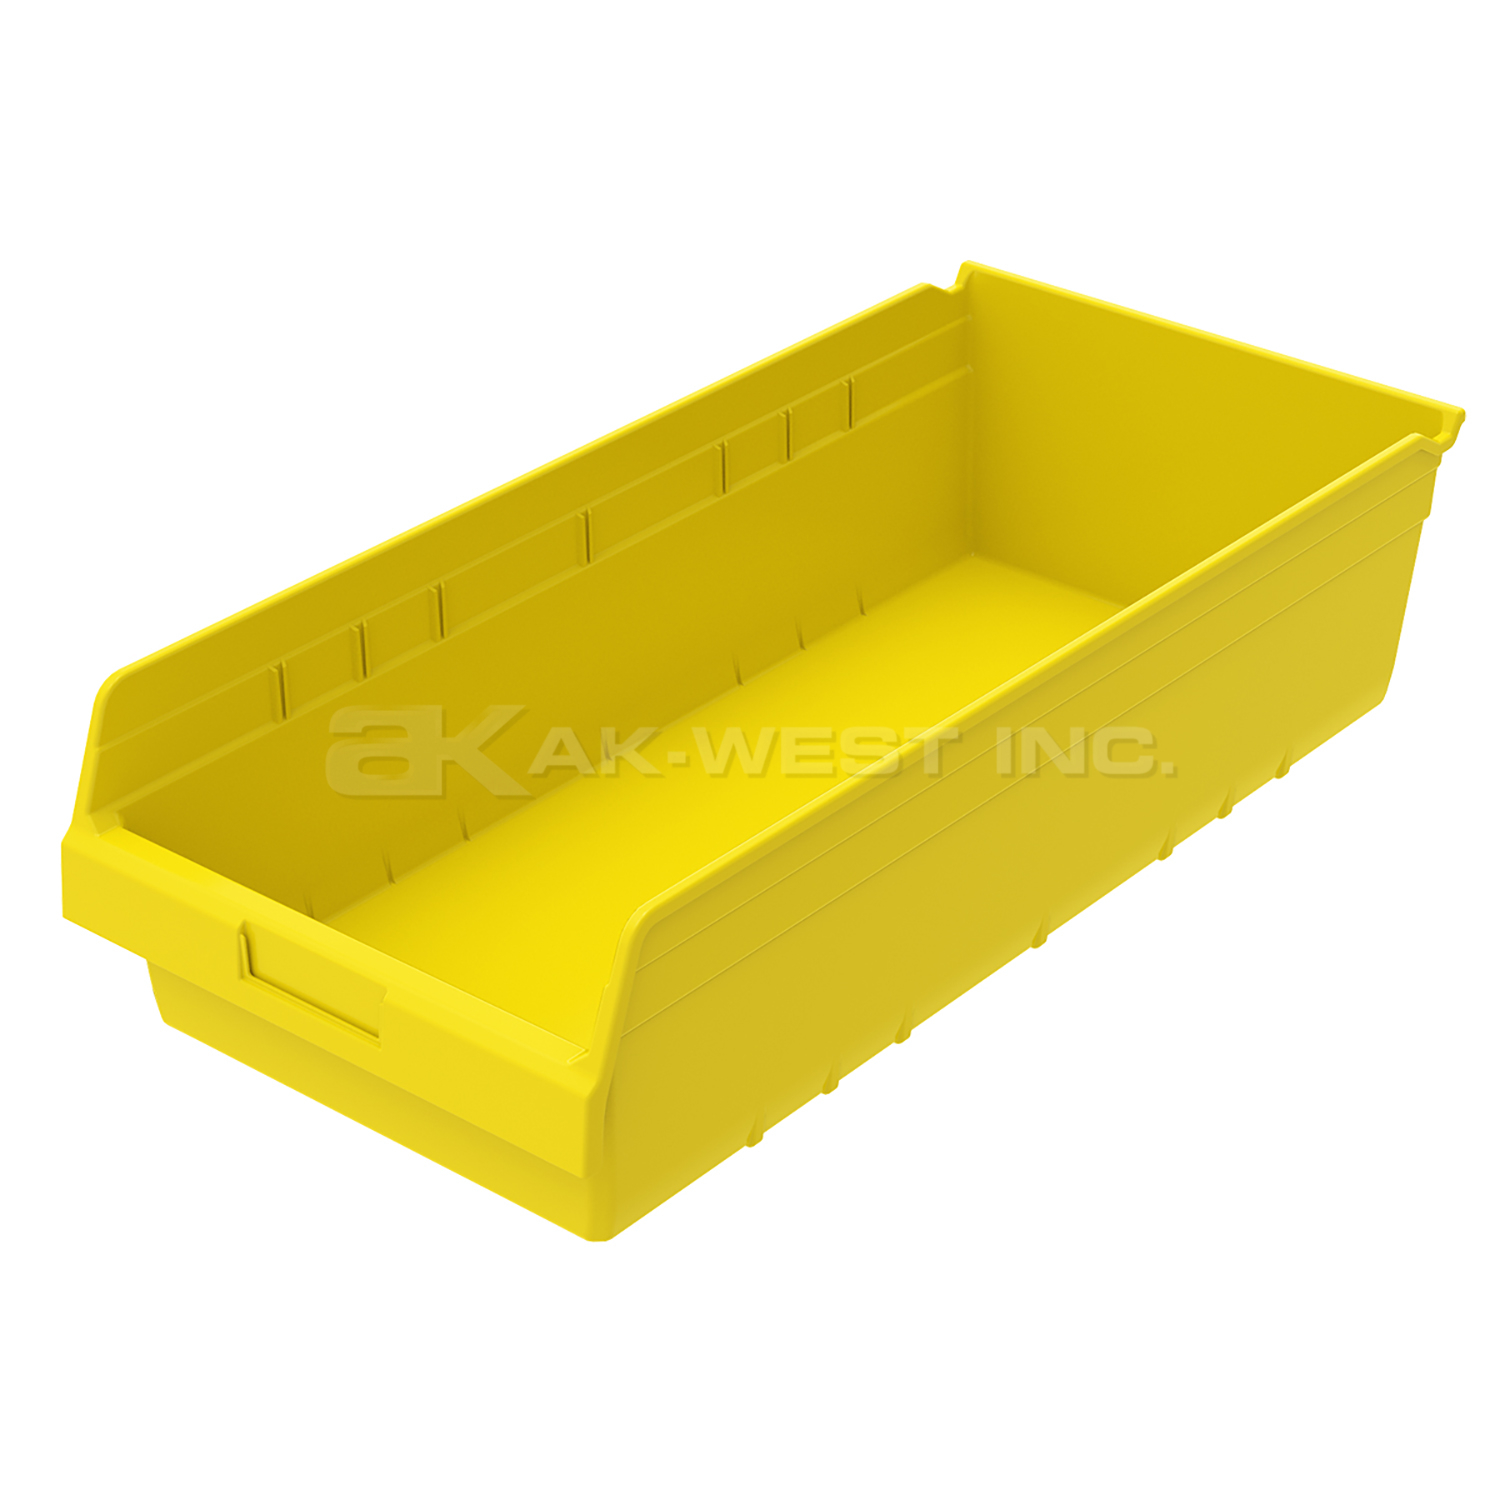 Yellow, 23-5/8" x 11-1/8" x 6" Shelf Bin (6 Per Carton)